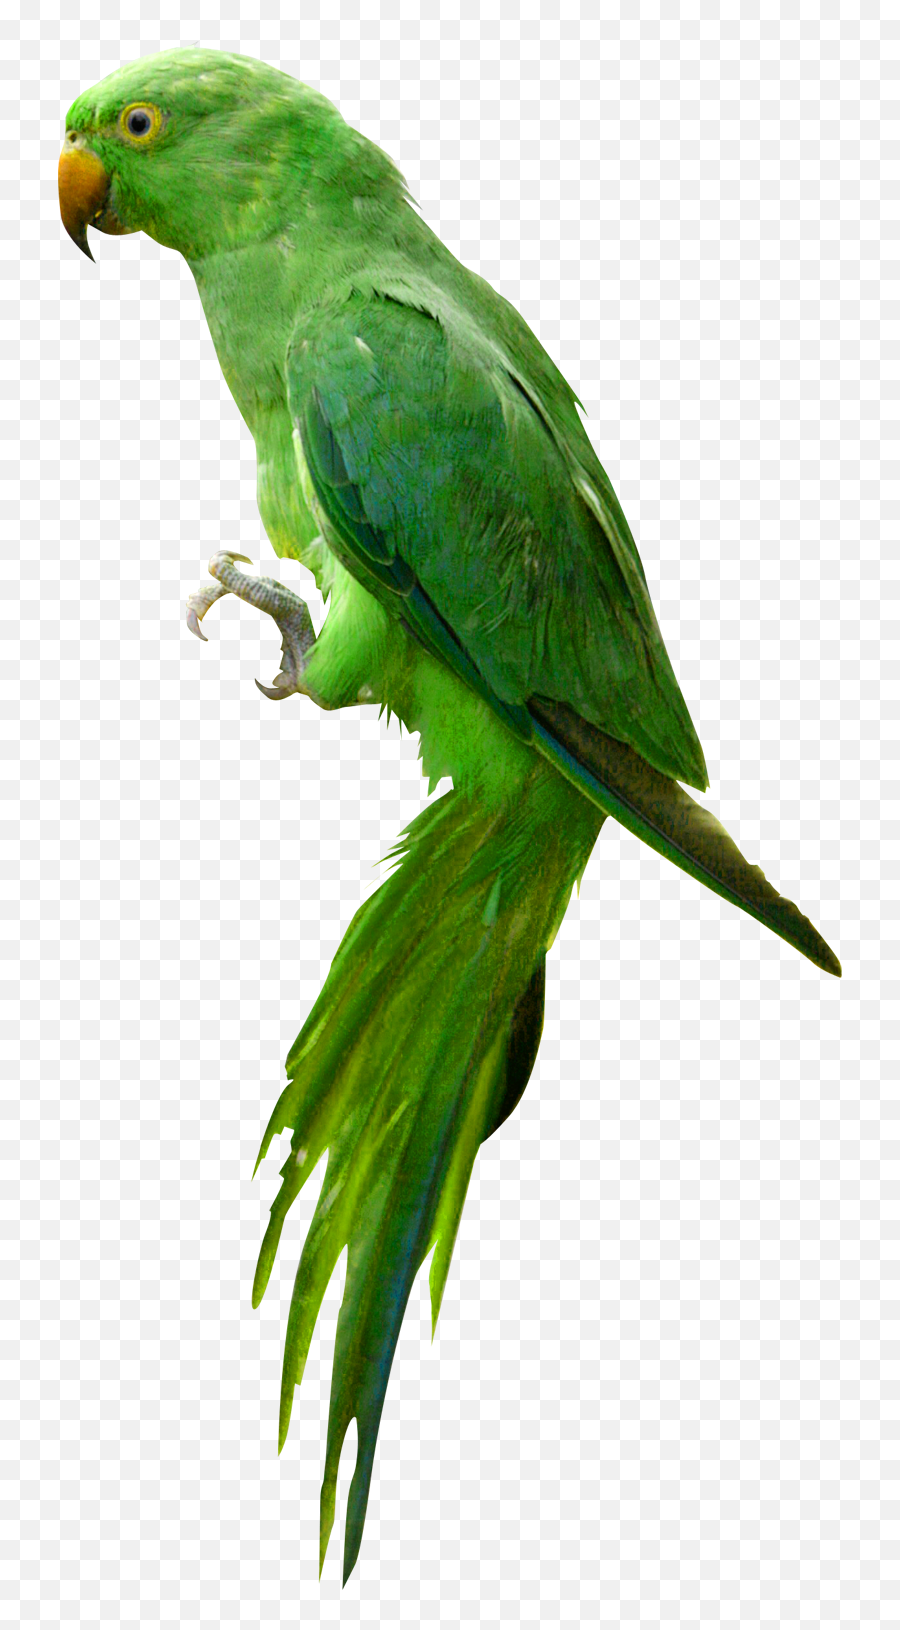 Parrot - Parrot Png Images Hd,Parrot Transparent Background